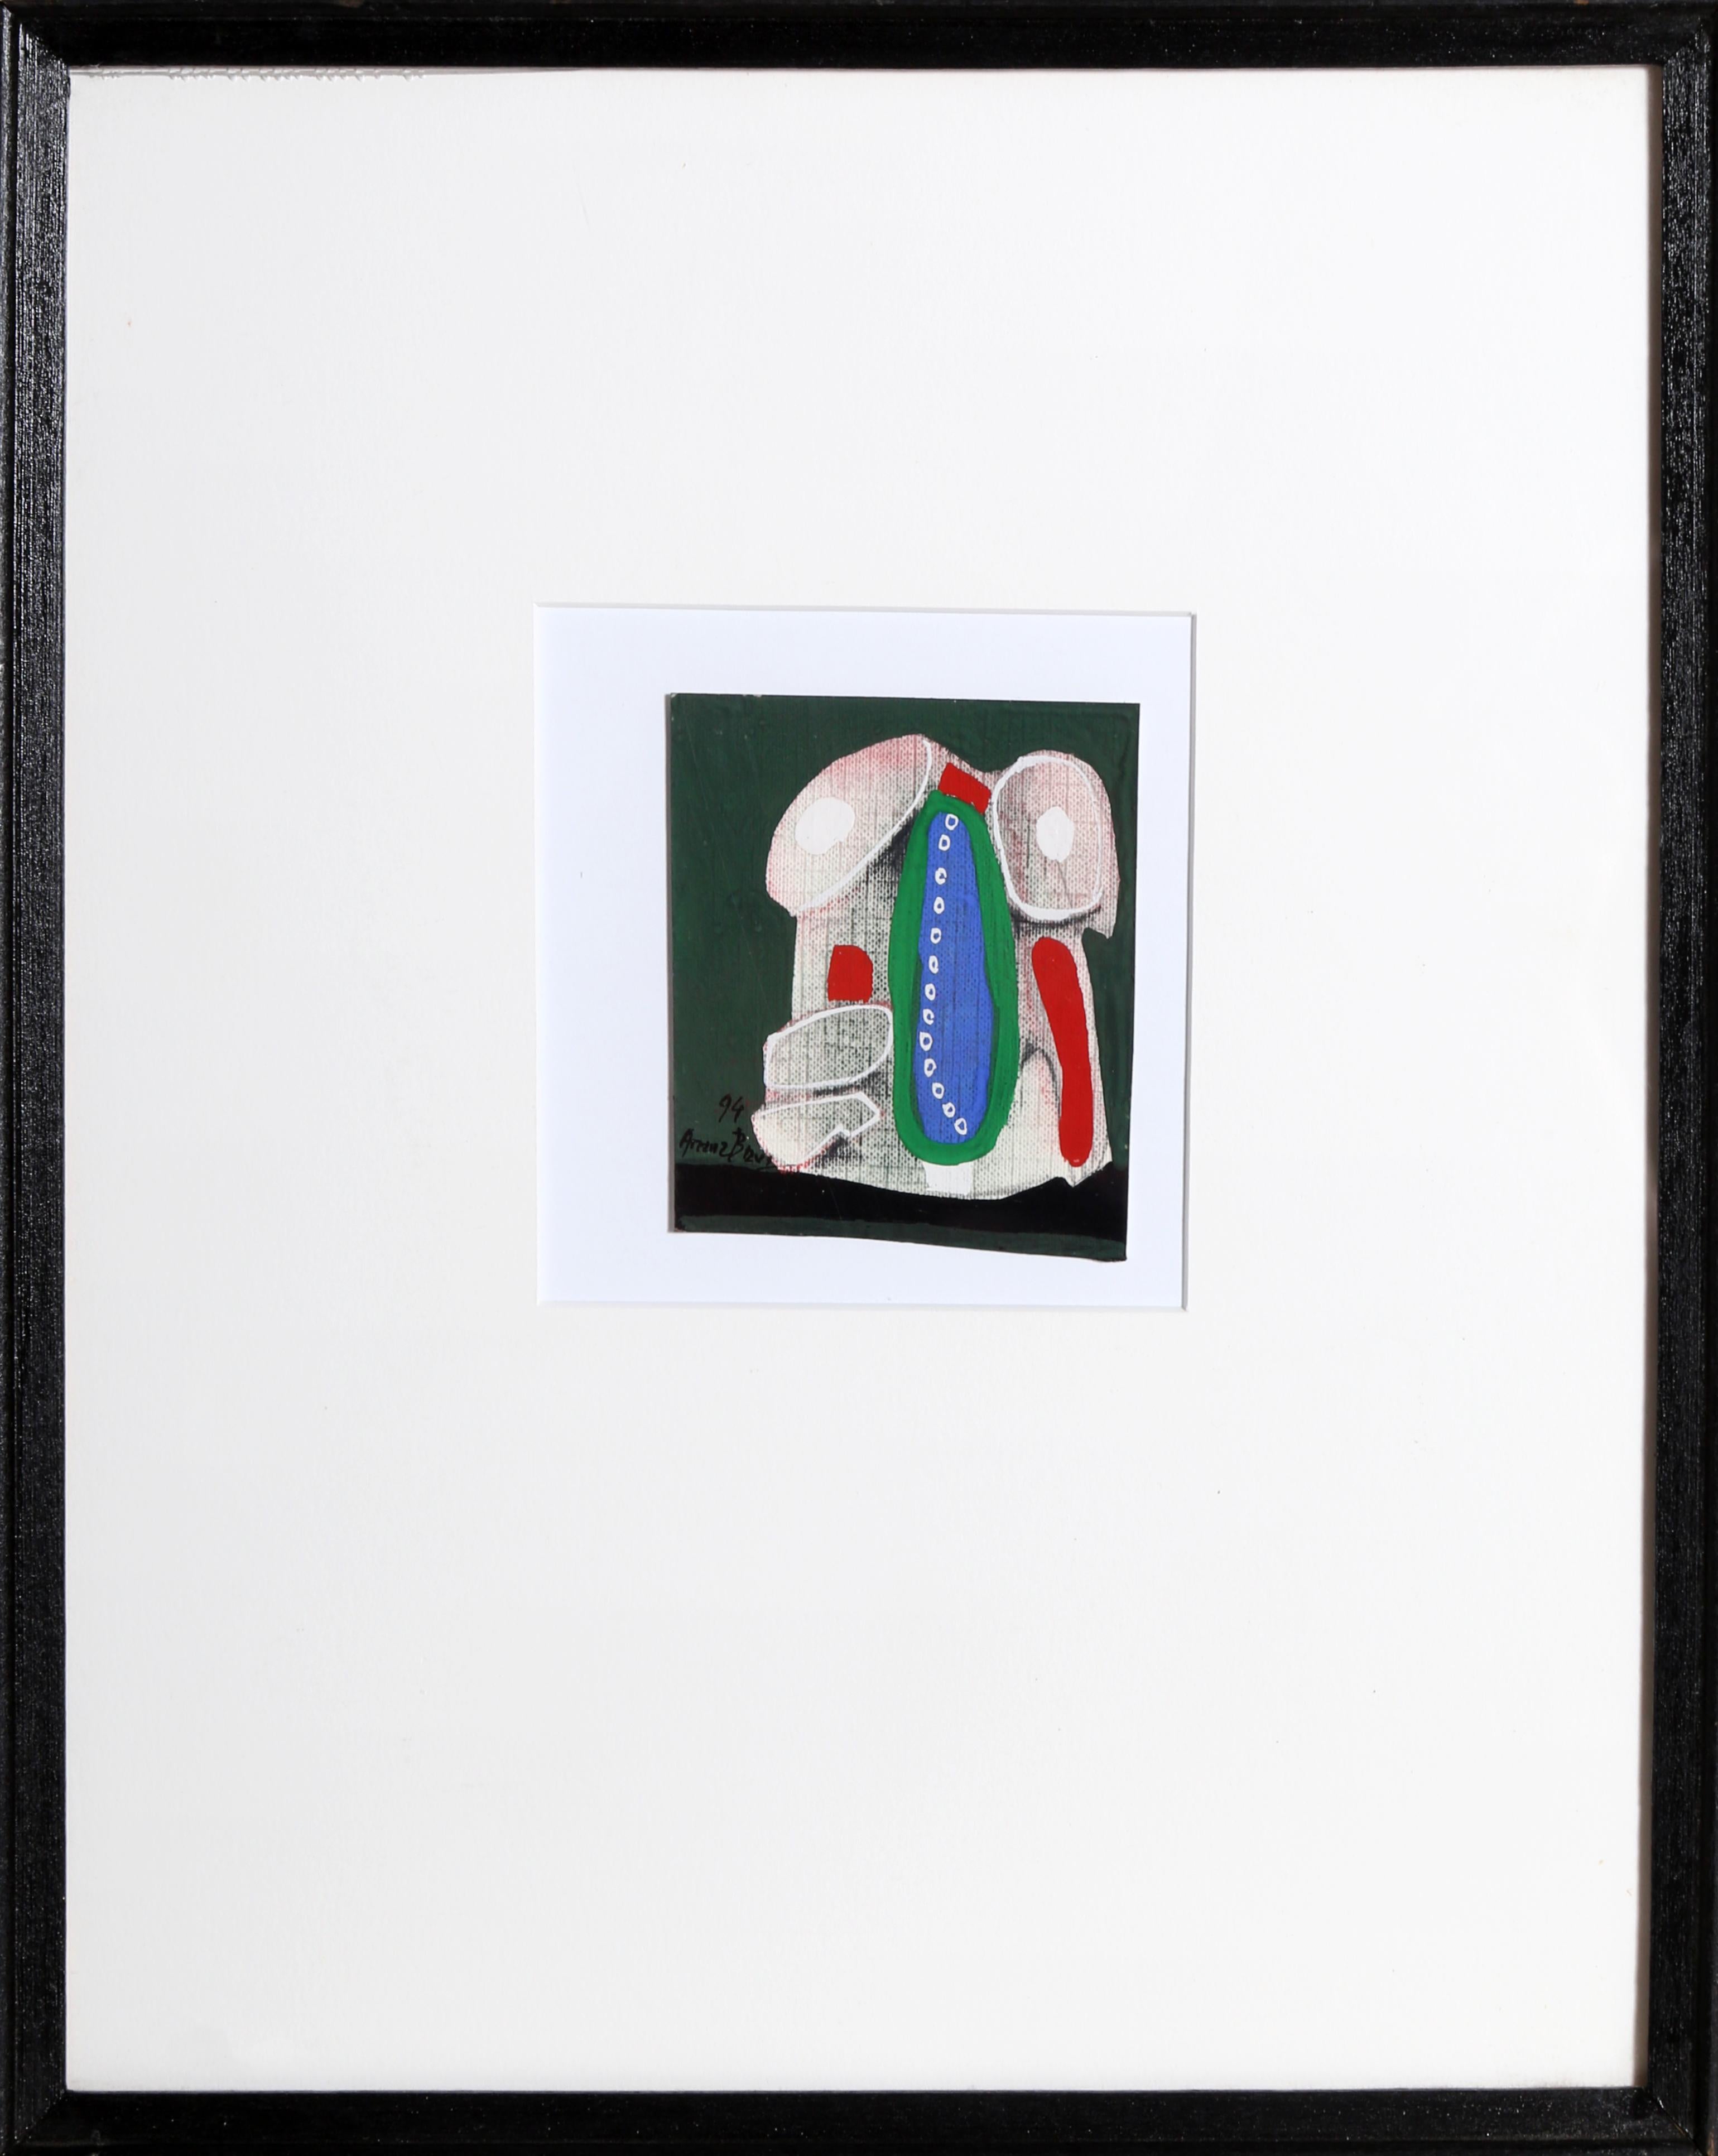 Œuvre d'art abstraite Mixed Media de l'artiste espagnol Eduardo Arranz-Bravo.

Cadaques n° 49
Eduardo Arranz-Bravo, espagnol (1941)
Date : 1994
Technique mixte sur papier, signée en bas à gauche
Taille : 3.75 x 3 in. (9.53 x 7.62 cm)
Taille du cadre